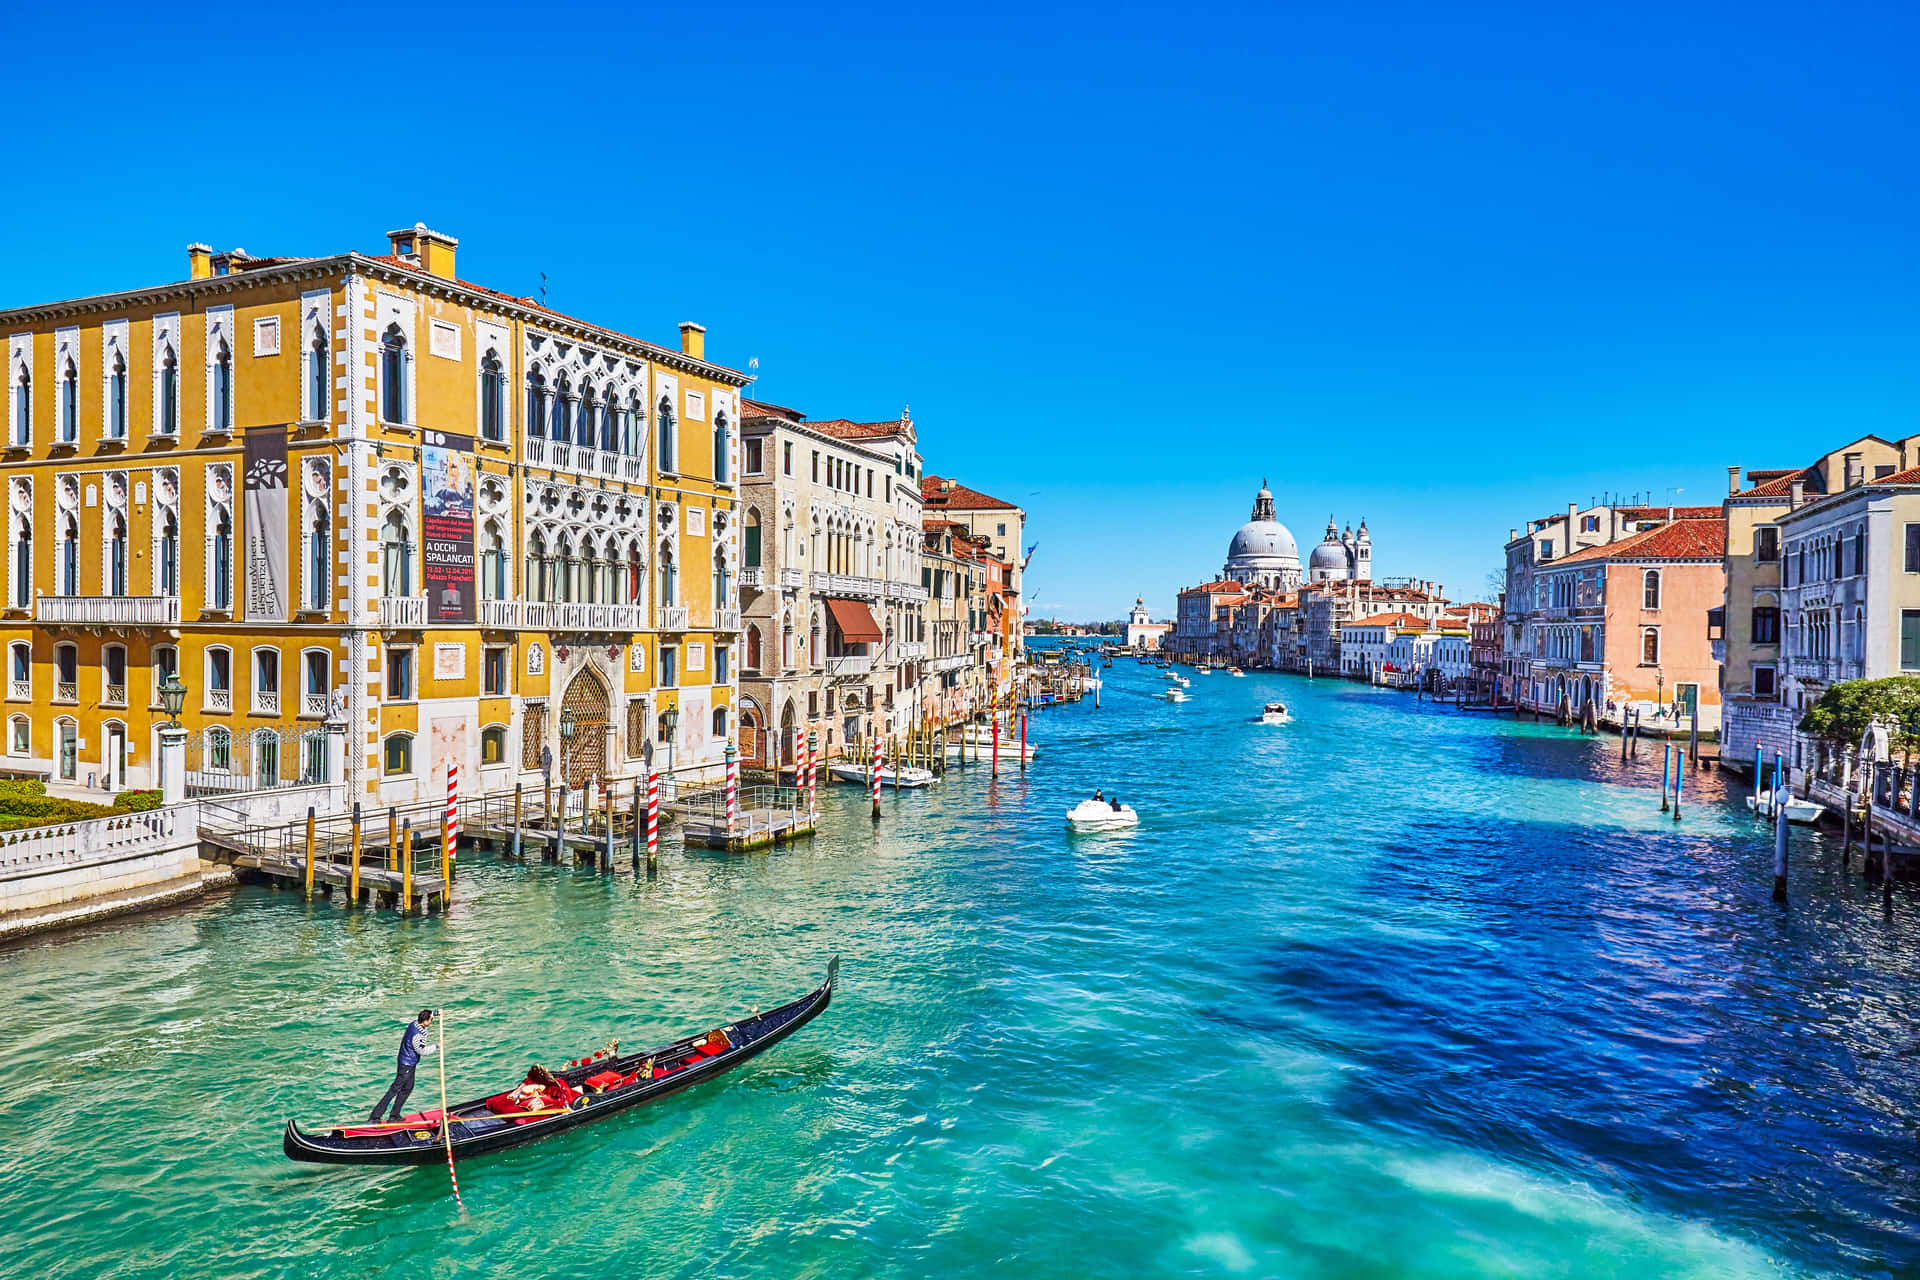 Venedig,italien - Venedig, Italien - Venedig, Italien - Venedig, Italien